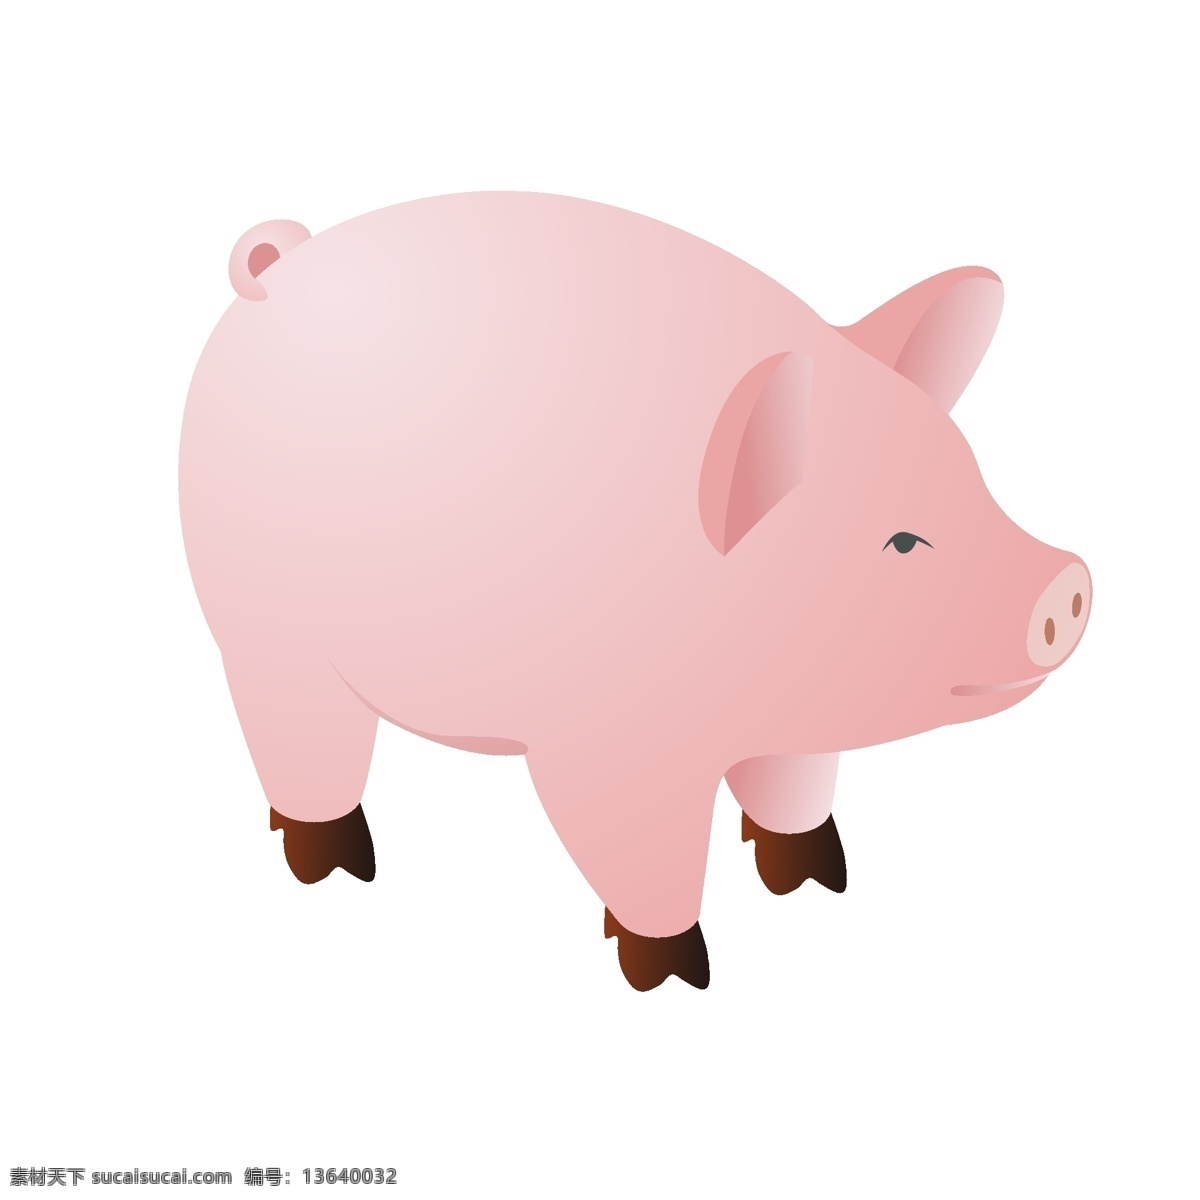 写实 风微 立体 矢量 猪 商用 元素 肉猪 肥猪 猪肉 动物 微立体 大猪蹄子 牲口